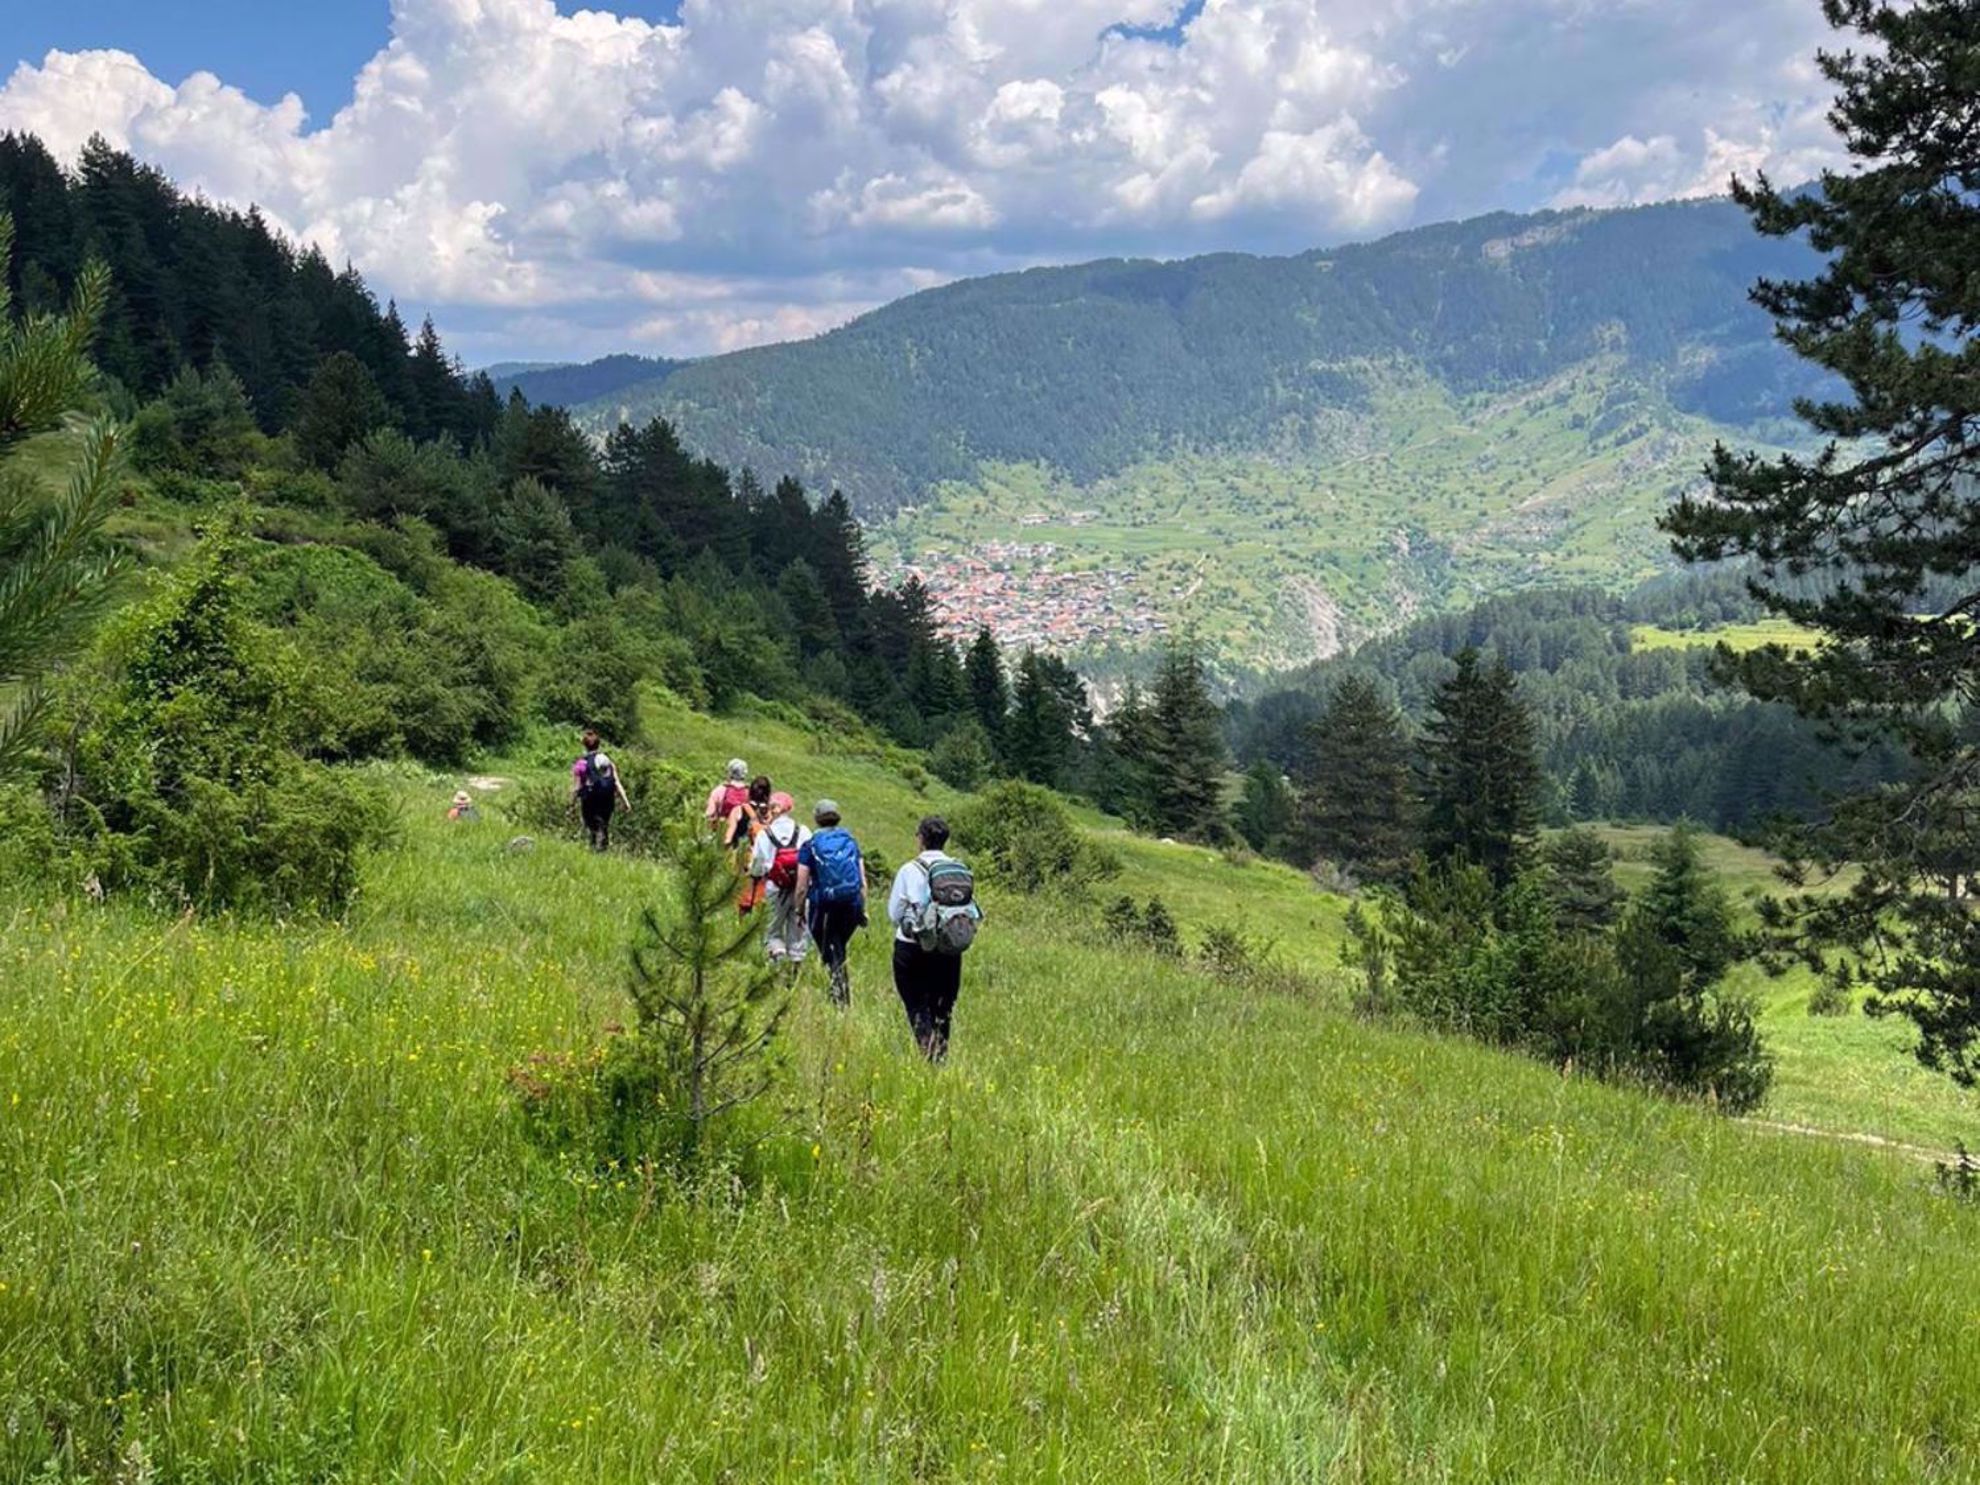 Bulgaria Greenery Hiking Trail